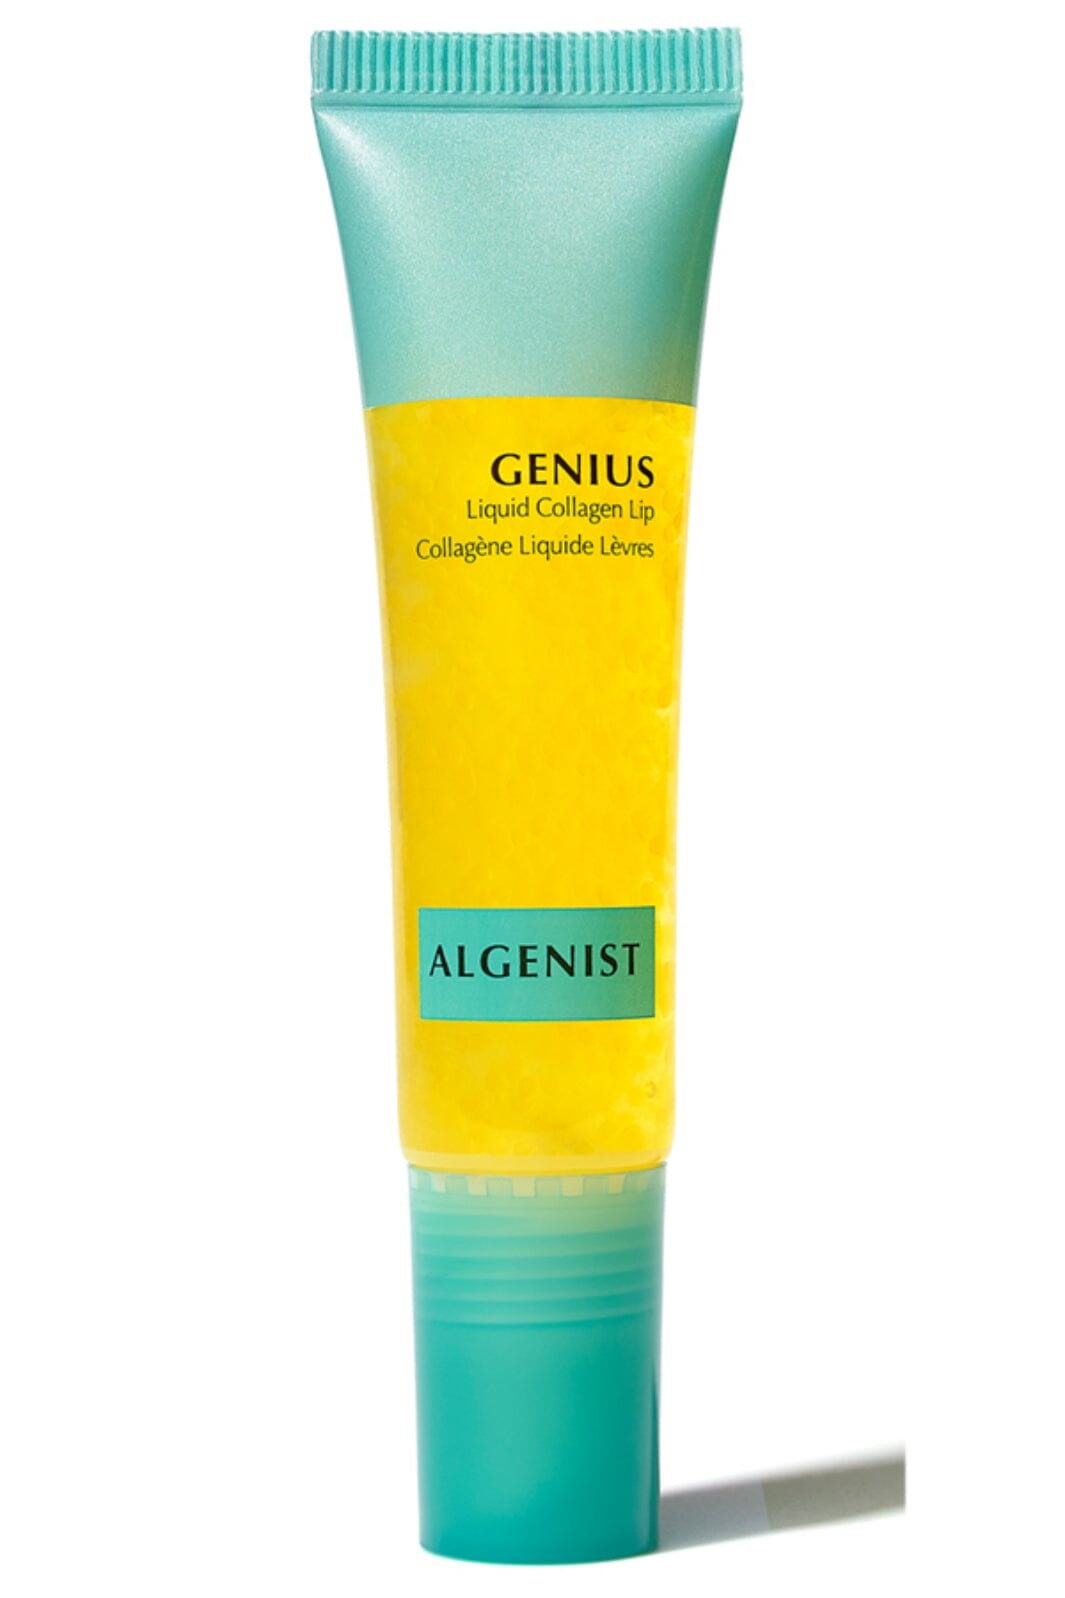 Algenist - Genius Liquid Collagen Lip Creme 